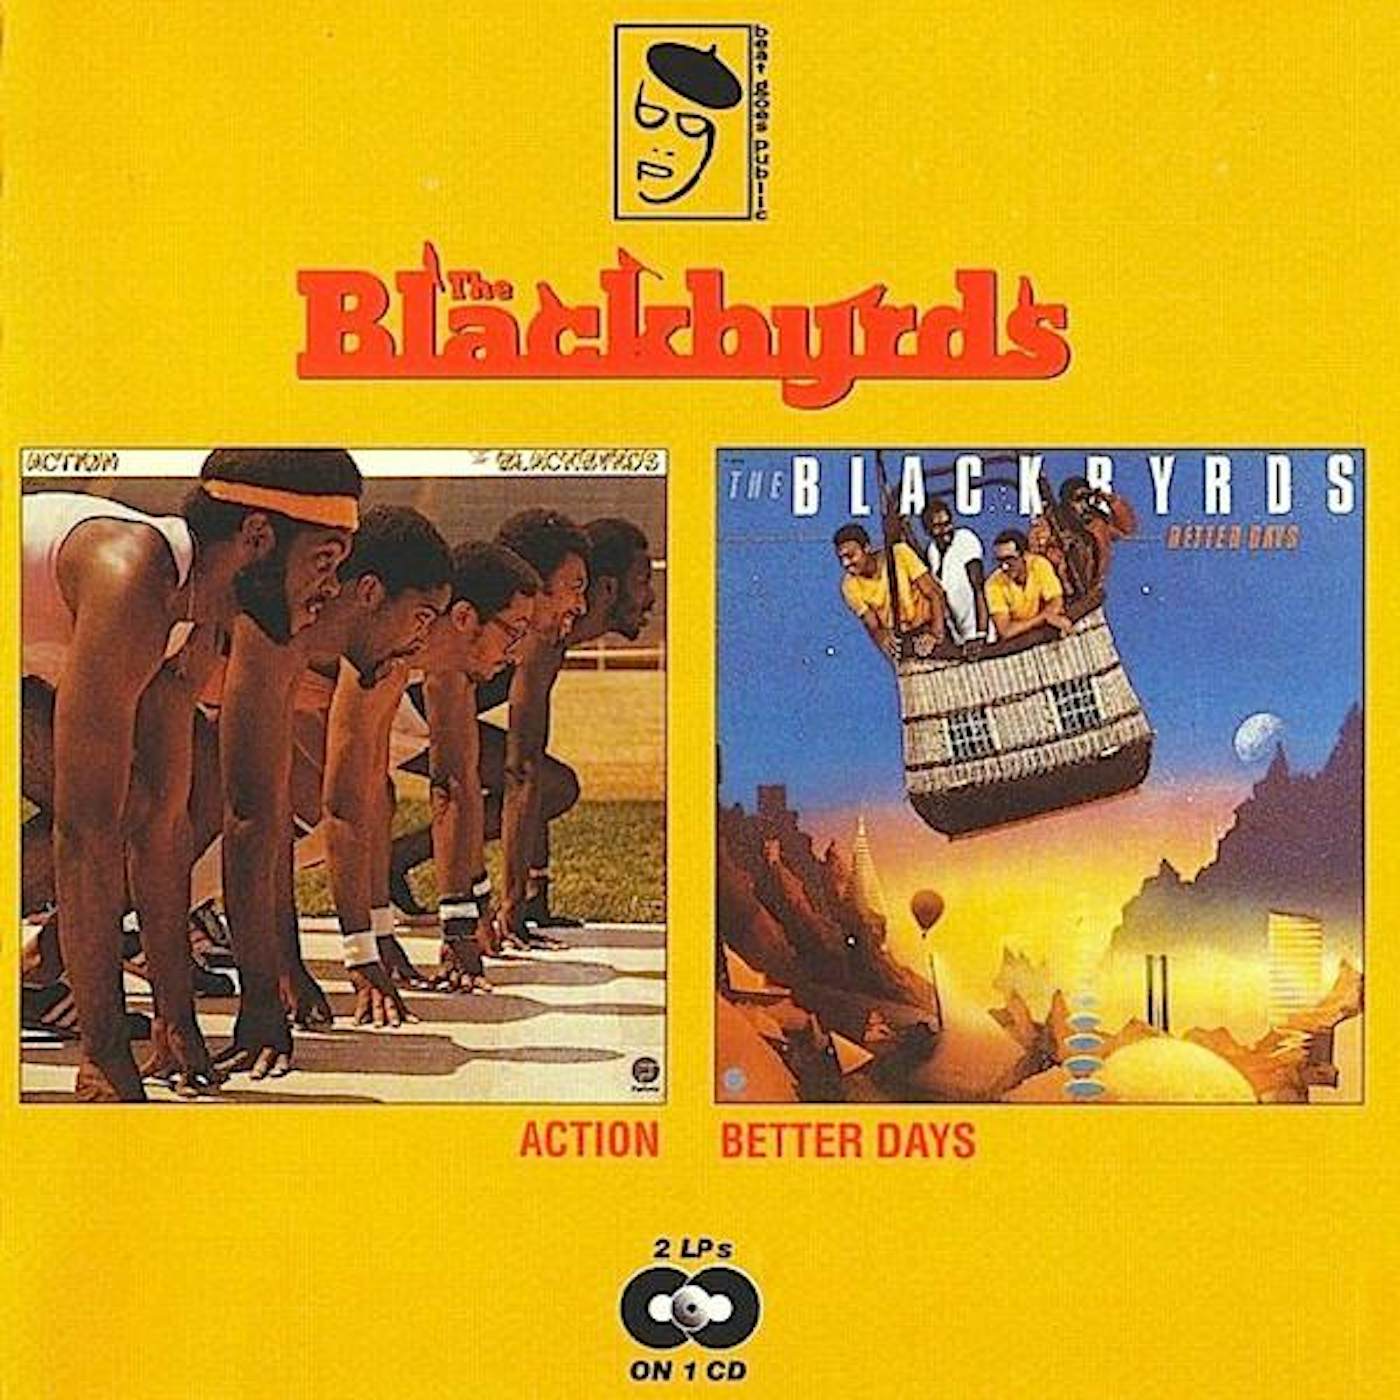 The Blackbyrds ACTION / BETTER DAYS CD